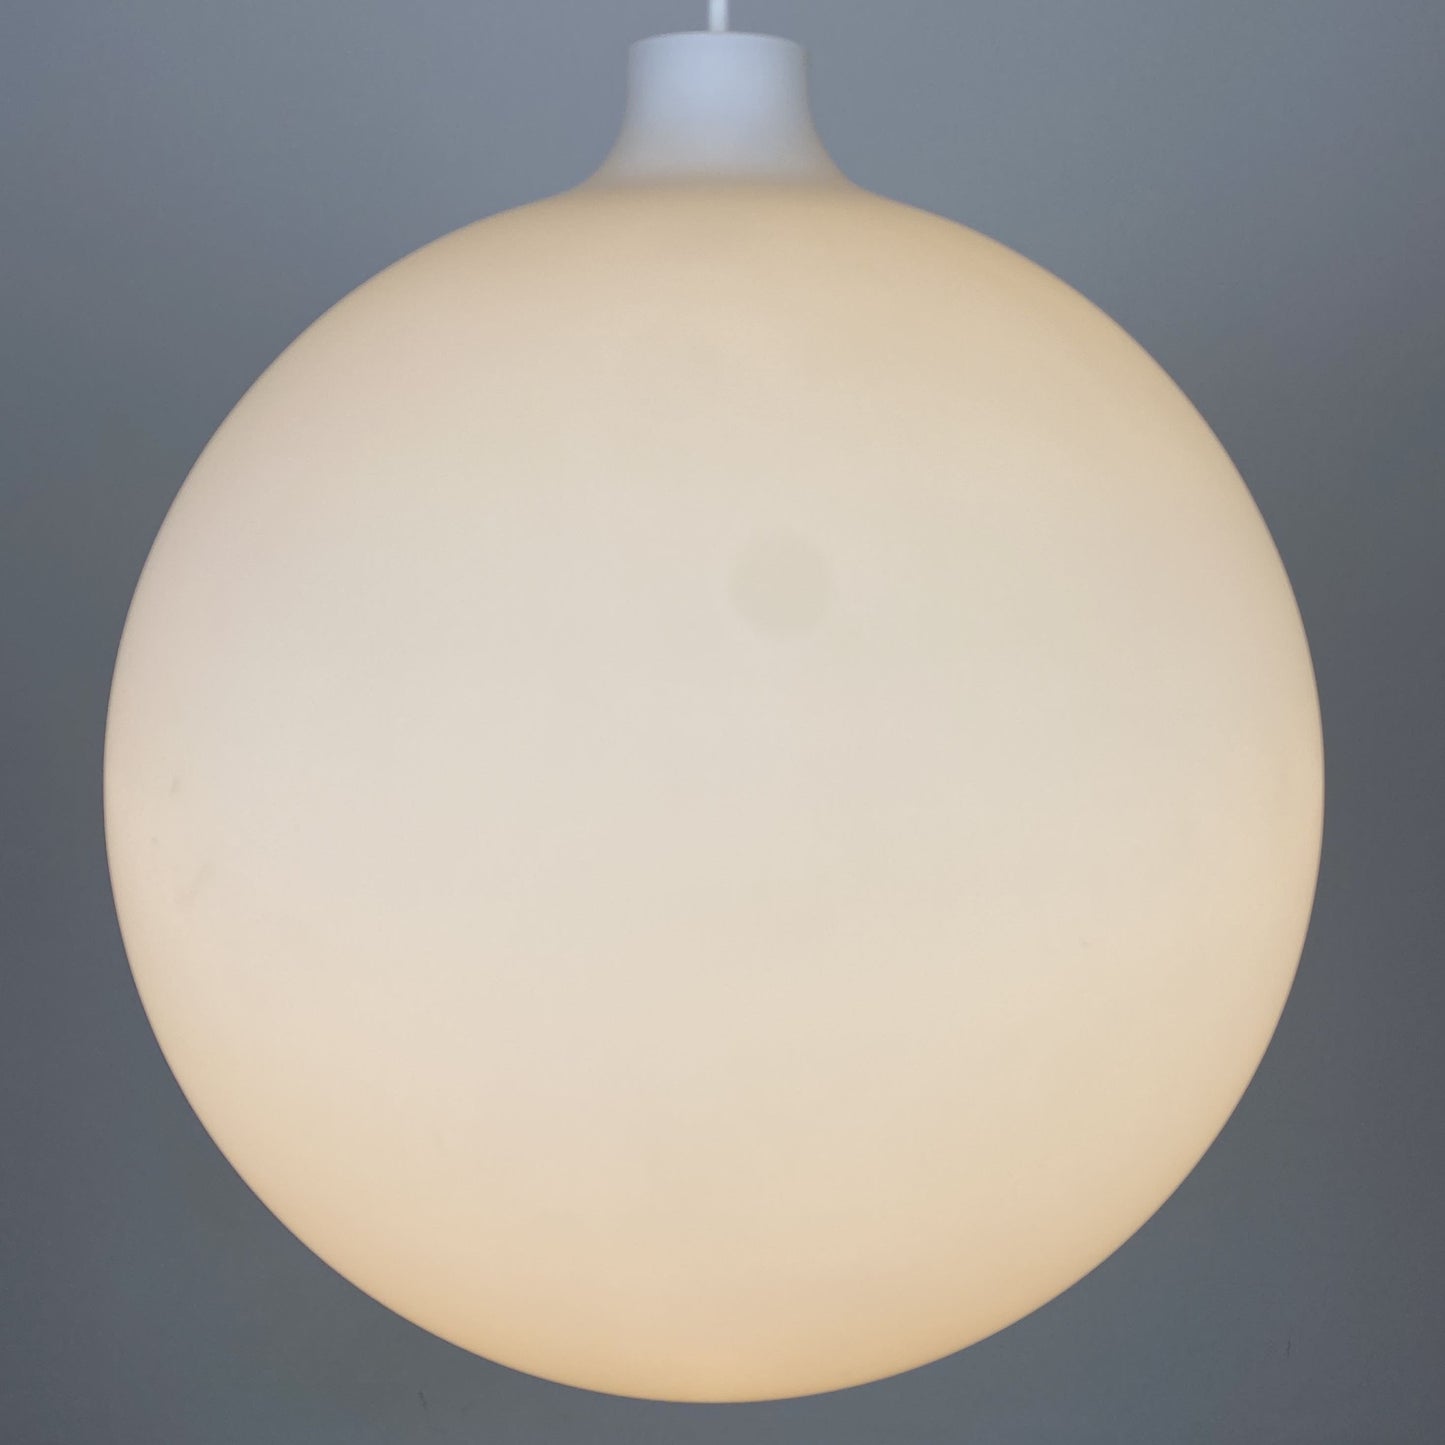 Large pendant light Satellite by Louis Poulsen for Vilhelm Wohlert Denmark 1959 XL